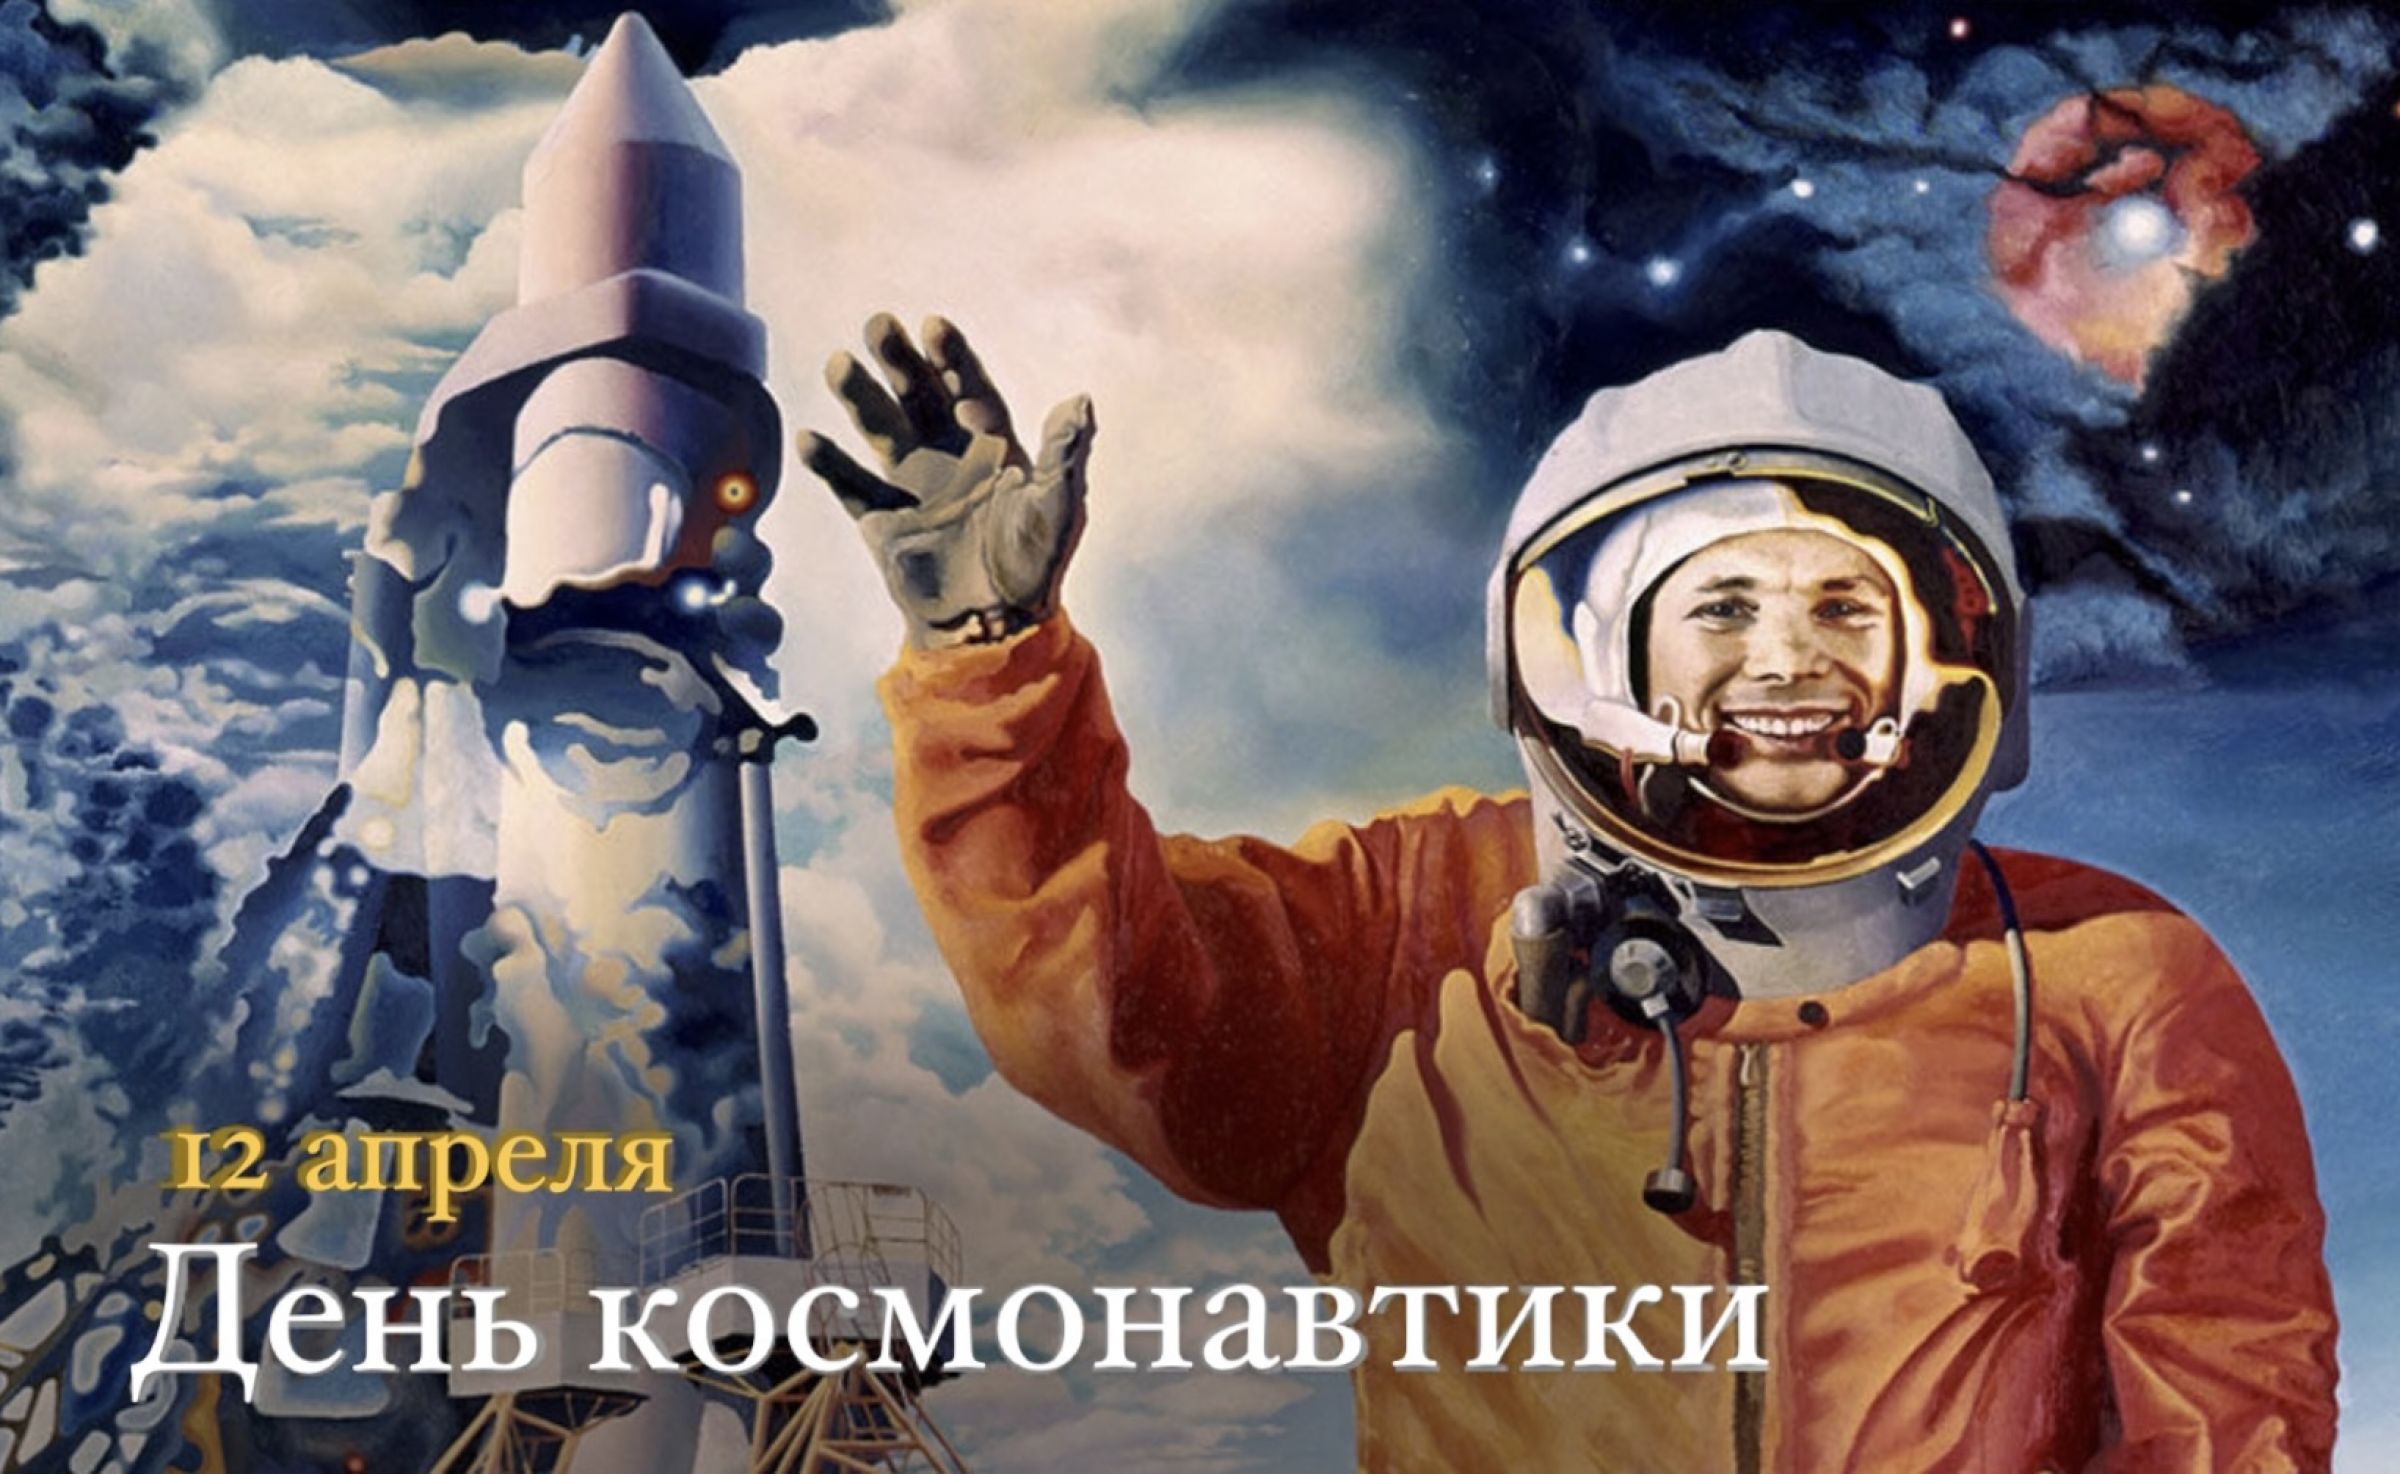 Видео первый человек в космосе. Гагарин первый полет в космос. Первый полет человека в космос Гагарин.